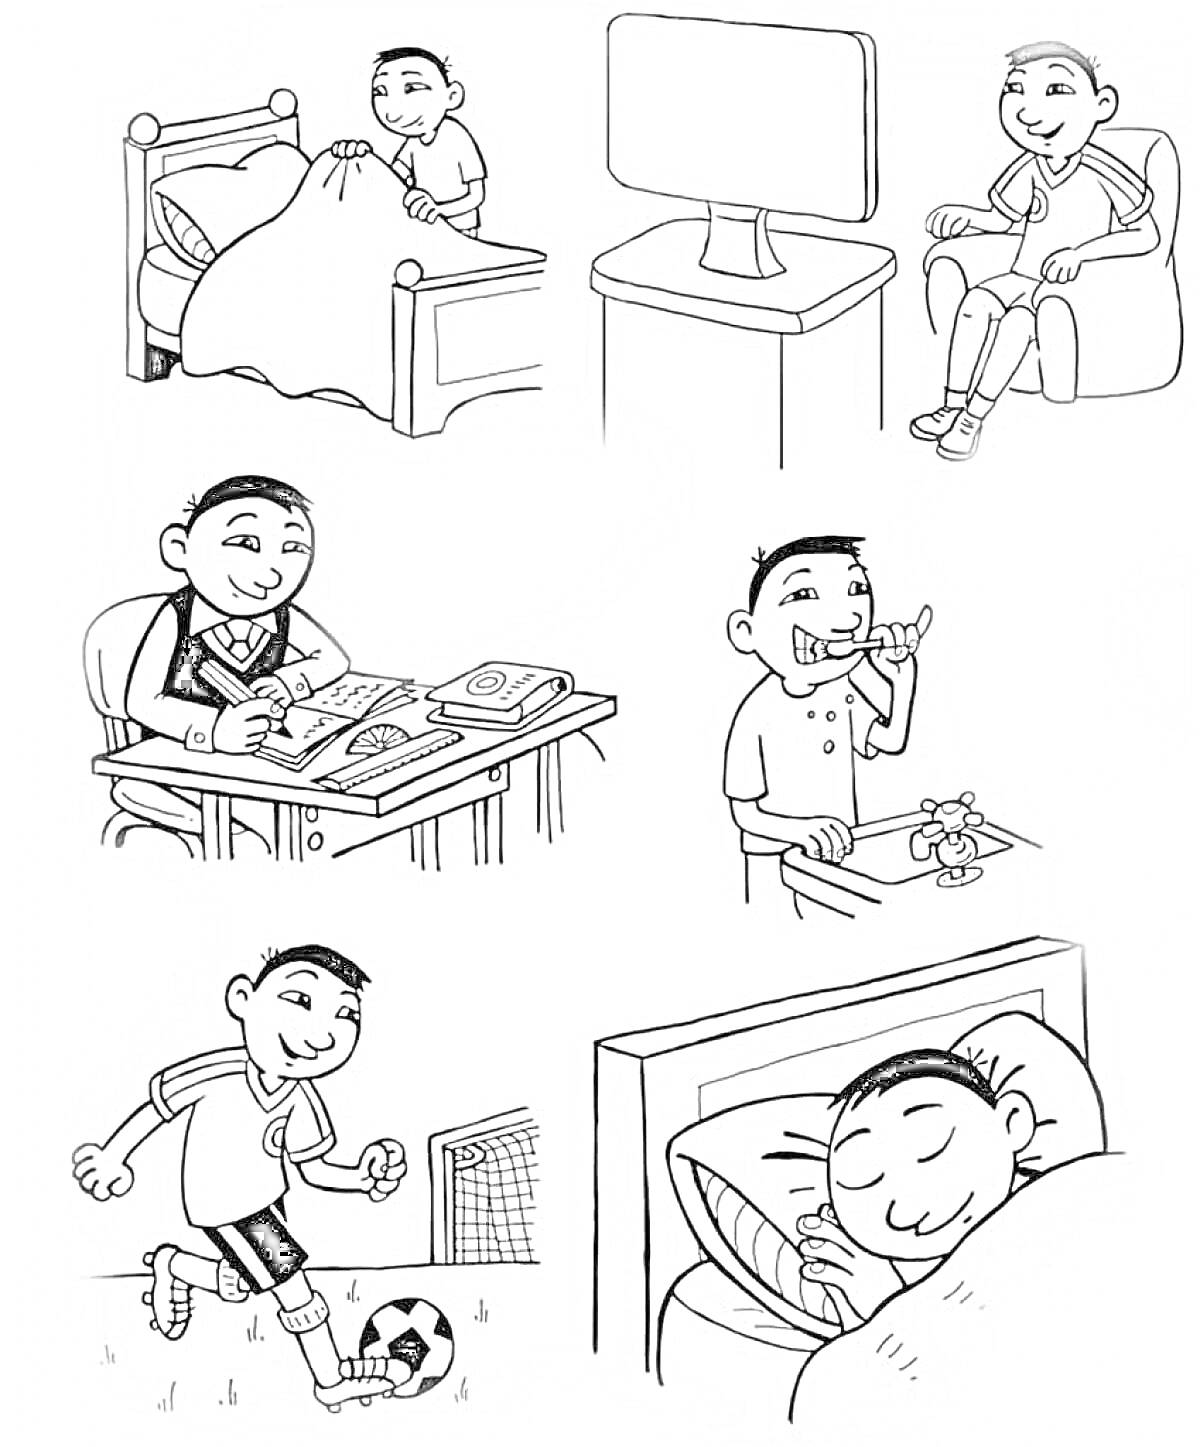 Мальчик в течение дня: вставание с кровати, просмотр телевизора, учеба, чистка зубов, игра в футбол, сон